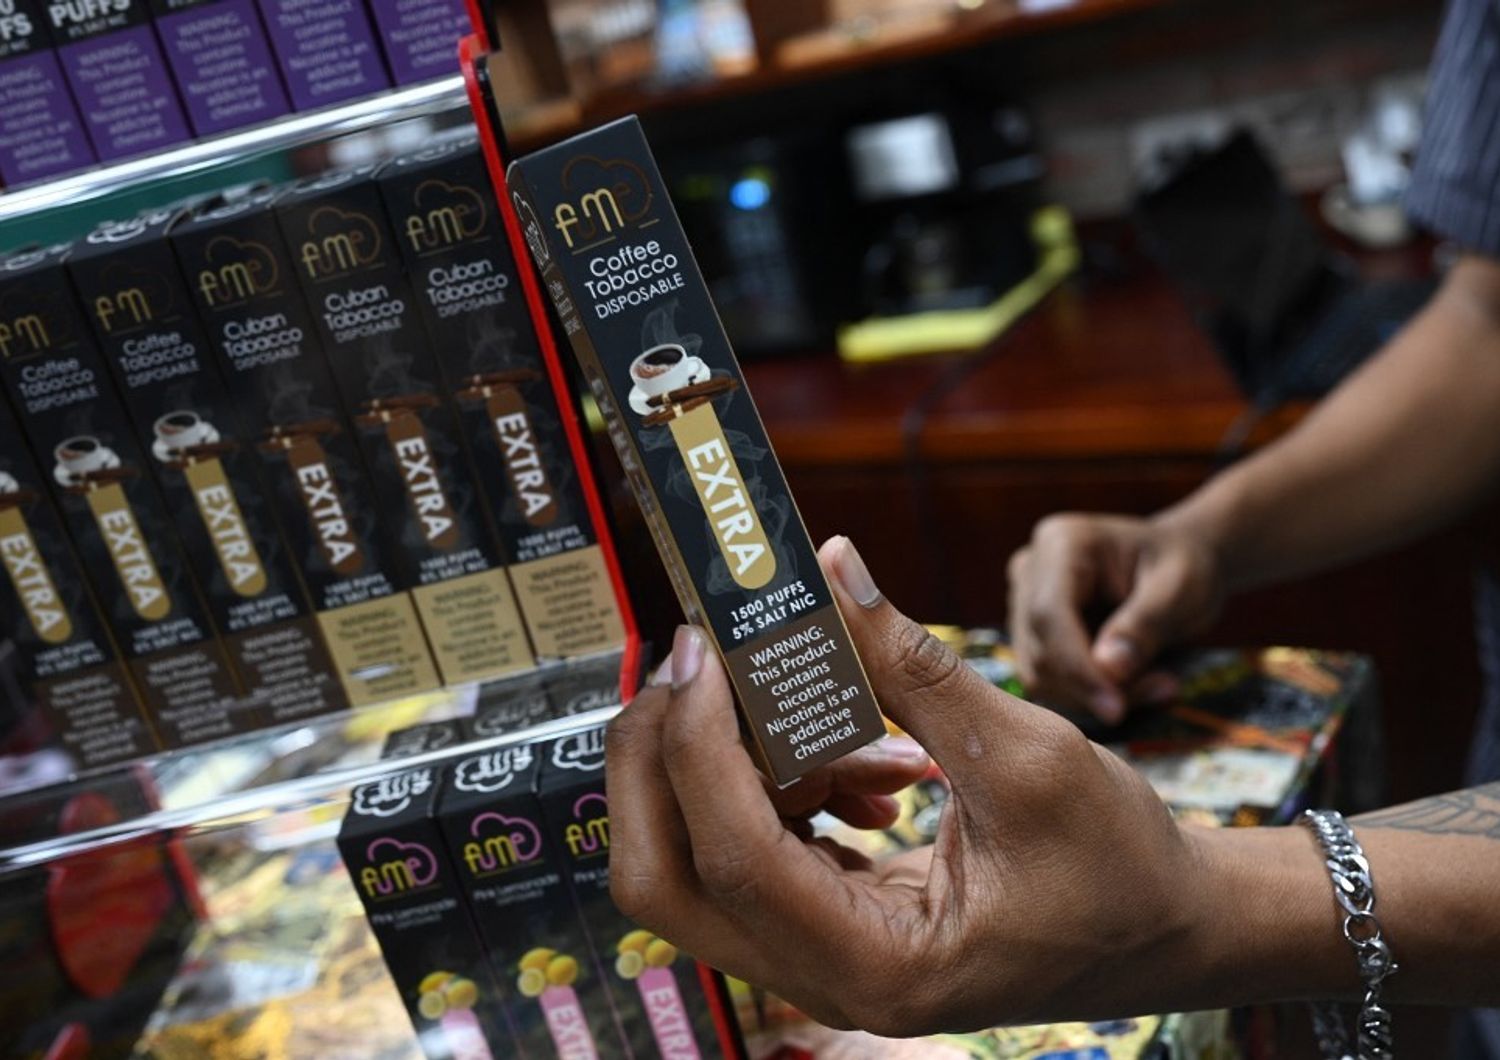 sigarette elettroniche monouso batterie litio minacciano ambiente